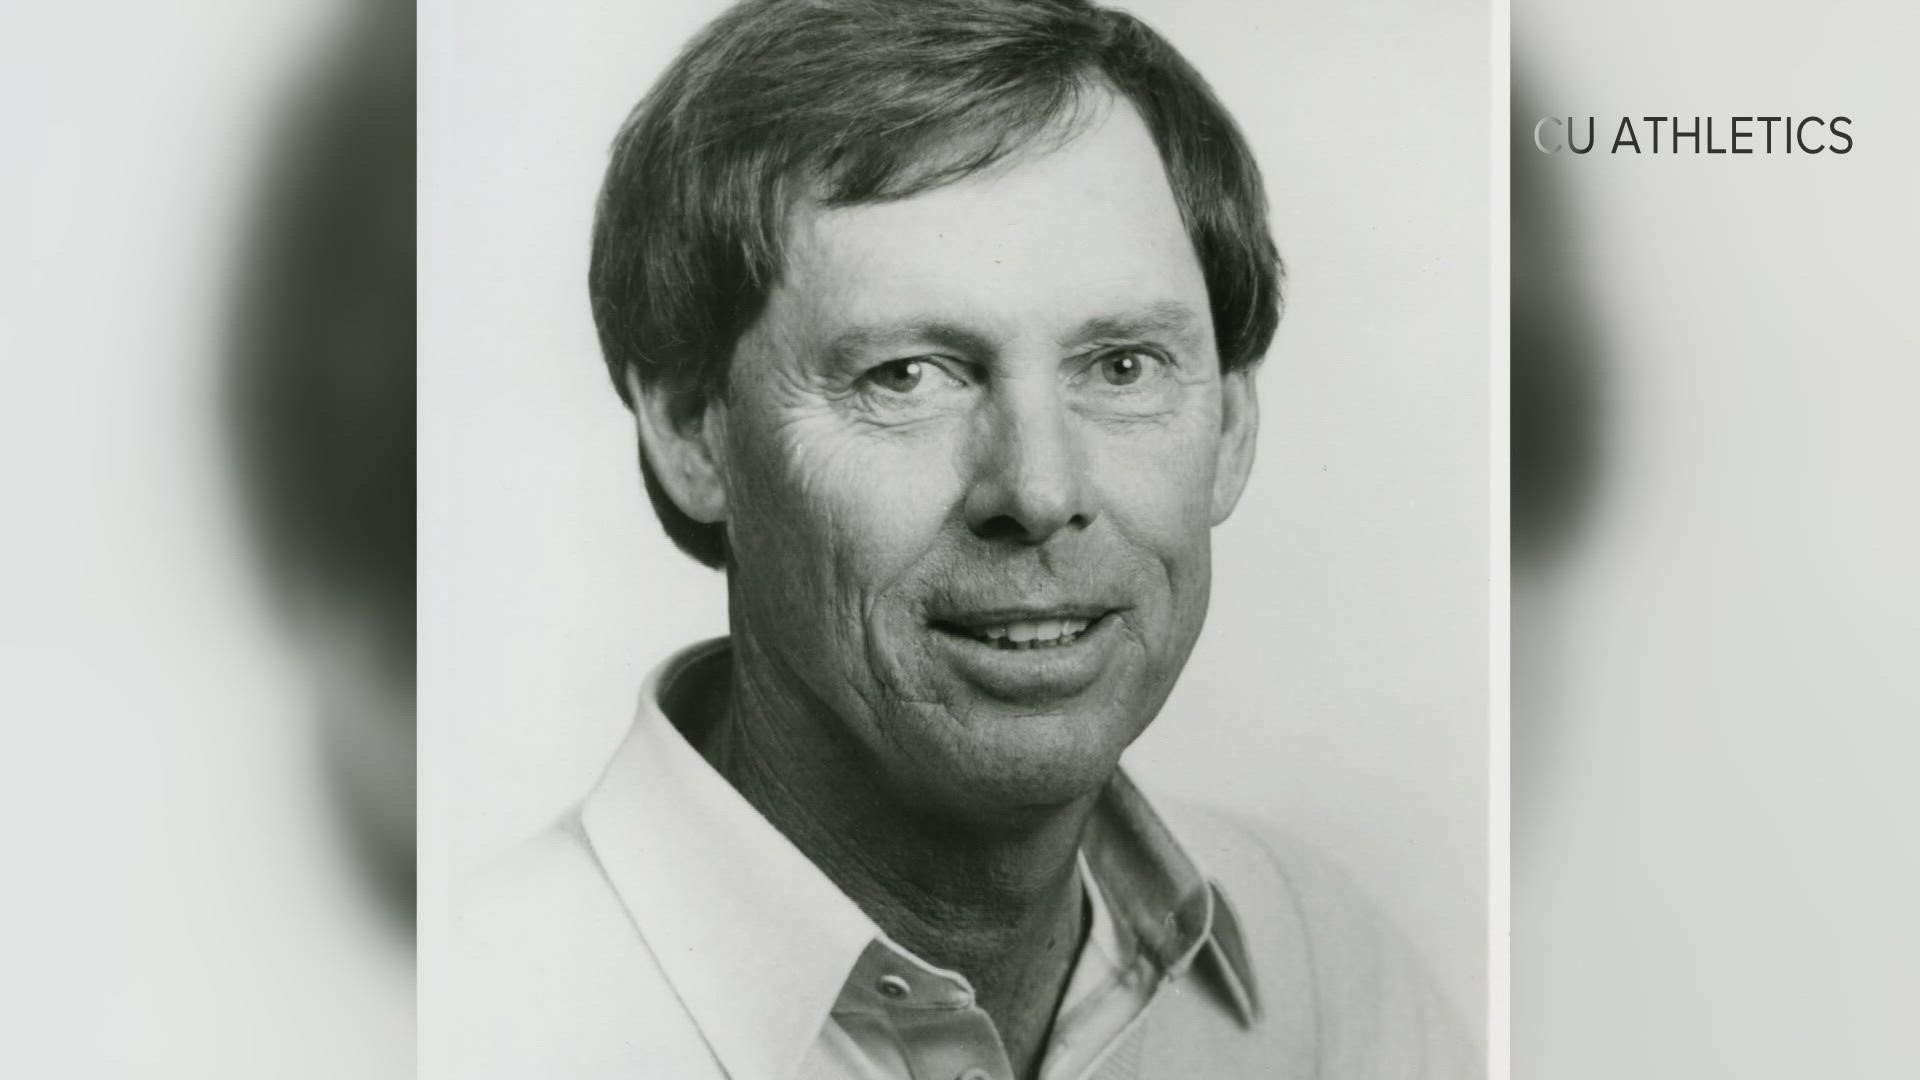 Douglass won 3 times on the PGA Tour and 11 times on the Senior Tour.